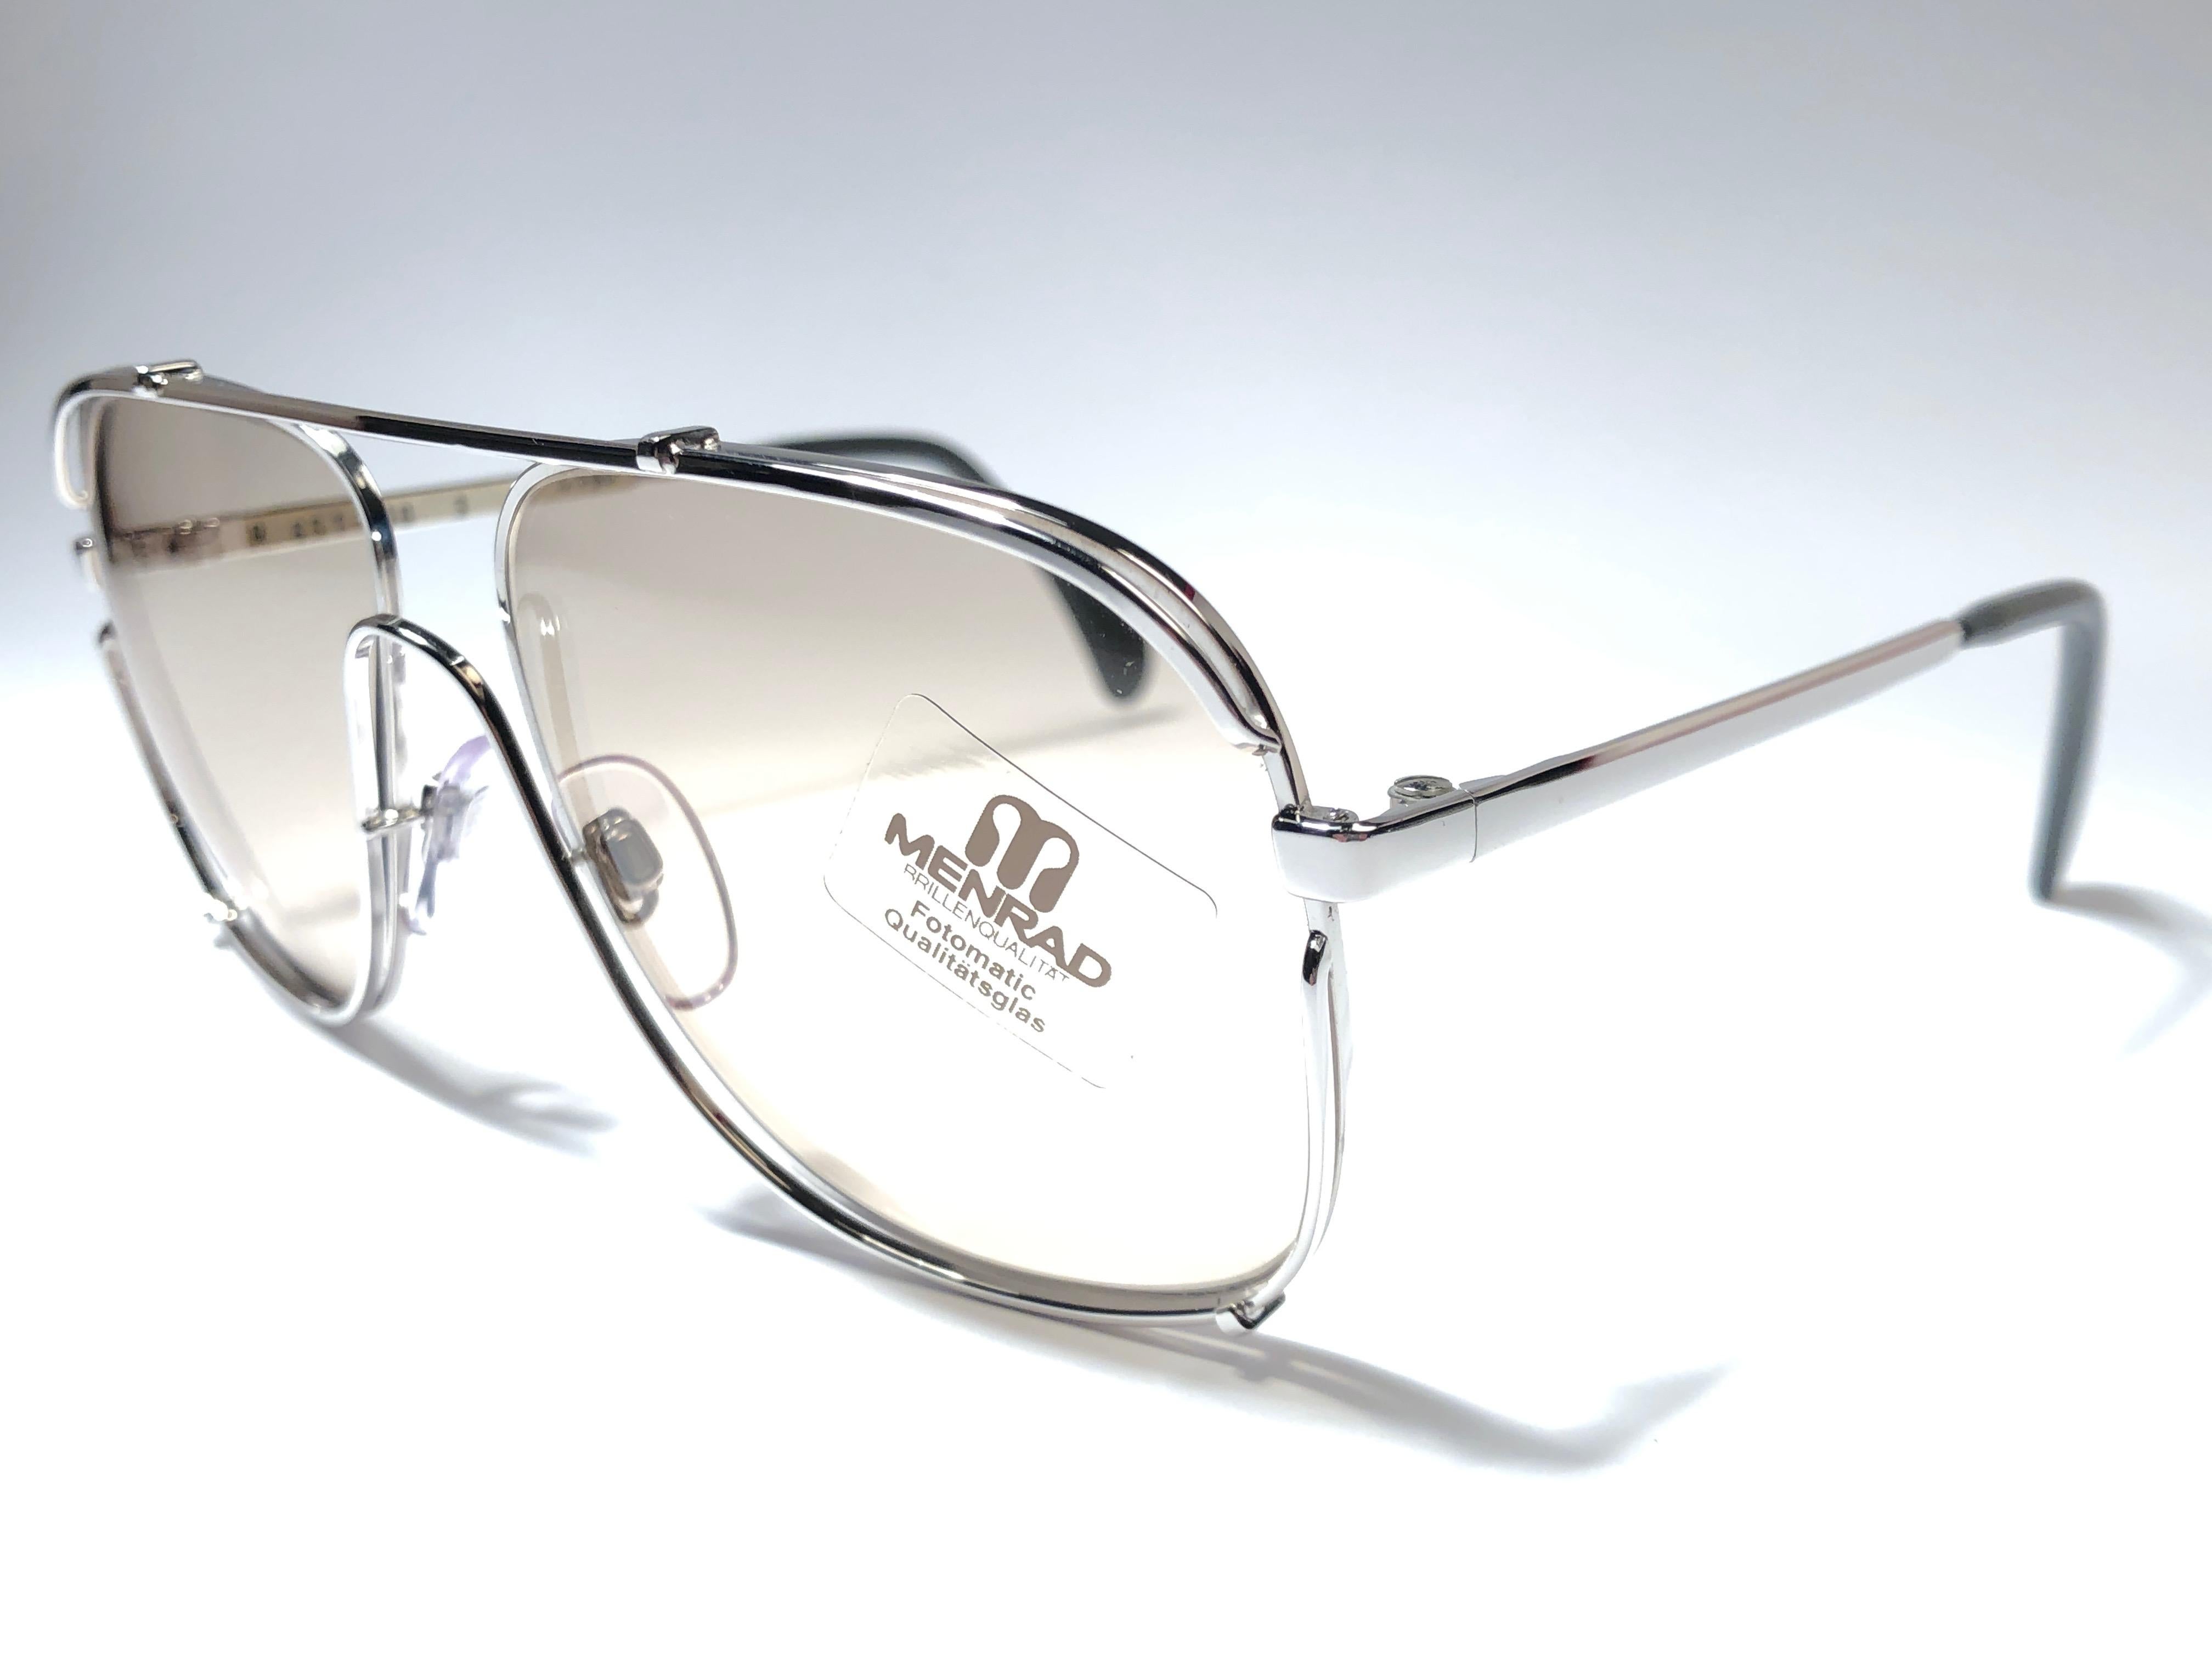 Nouveau Vintage Collector Item Menrad Silver Sunglasses cadre tenant une paire de lentilles changeables impeccable.

Fabriqué en Allemagne dans les années 1970.



